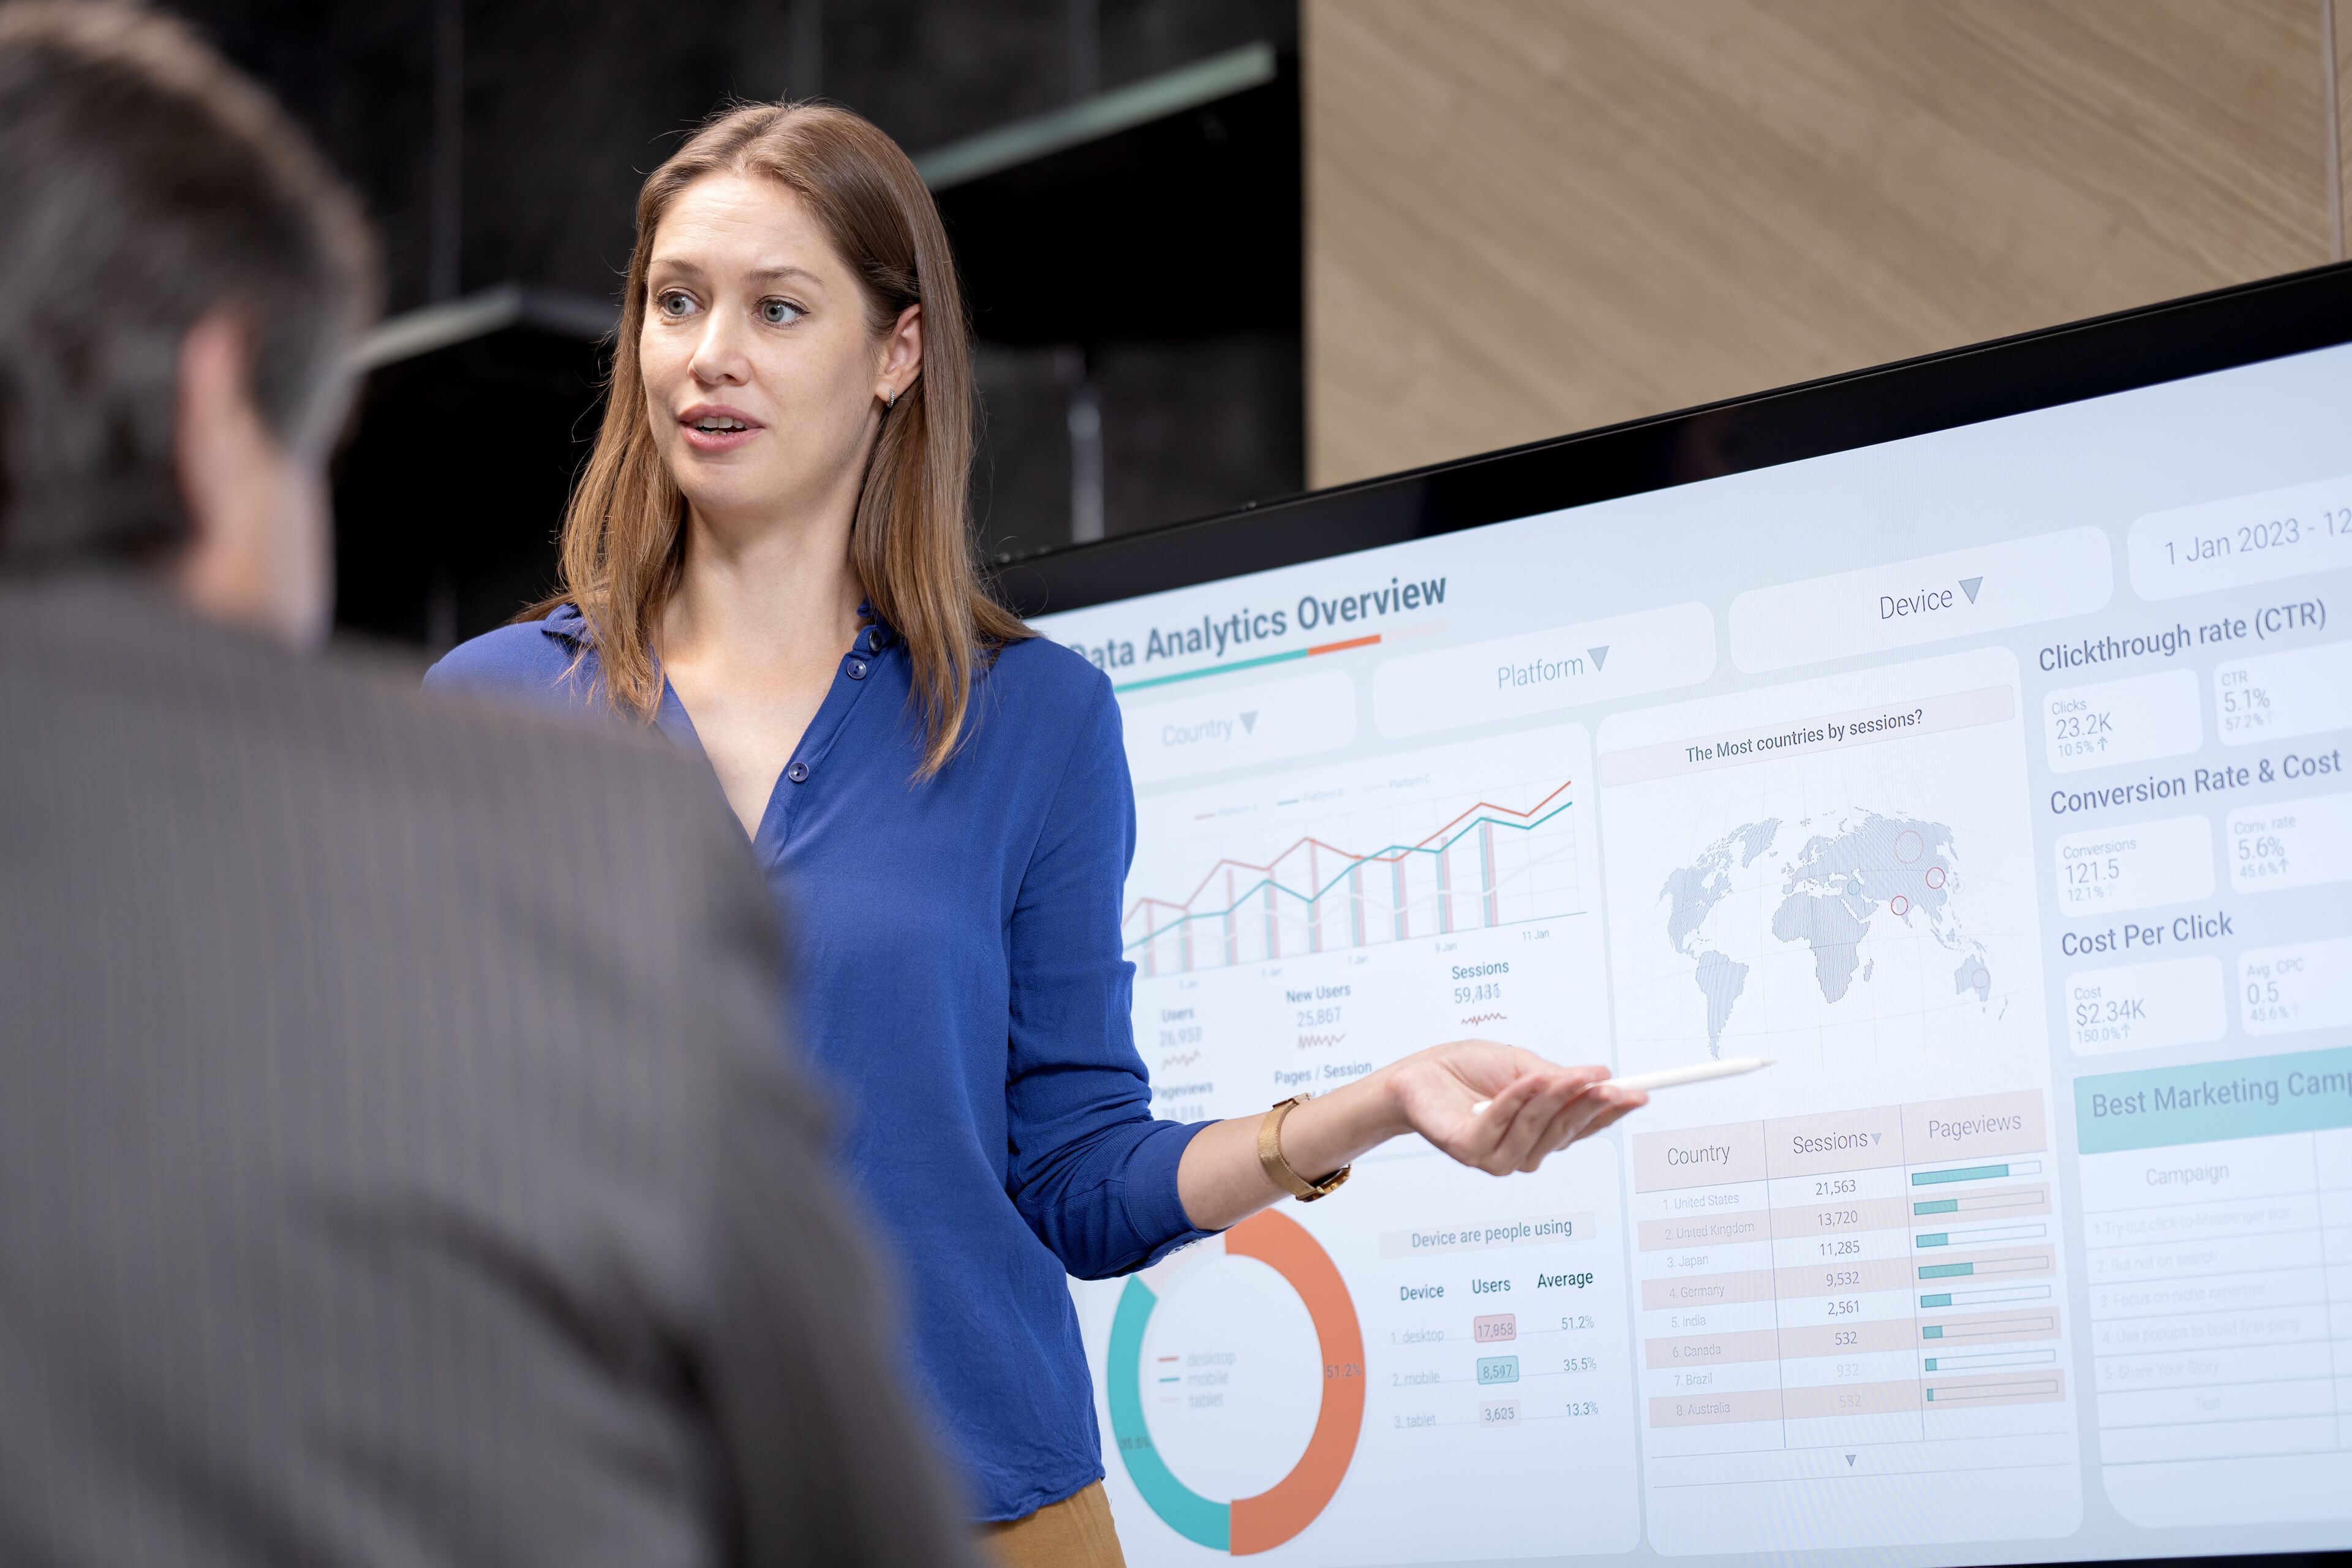 Une professionnelle présentant des données d'analyse sur un écran à un collègue, avec des graphiques, des cartes du monde et des indicateurs de performance clés.